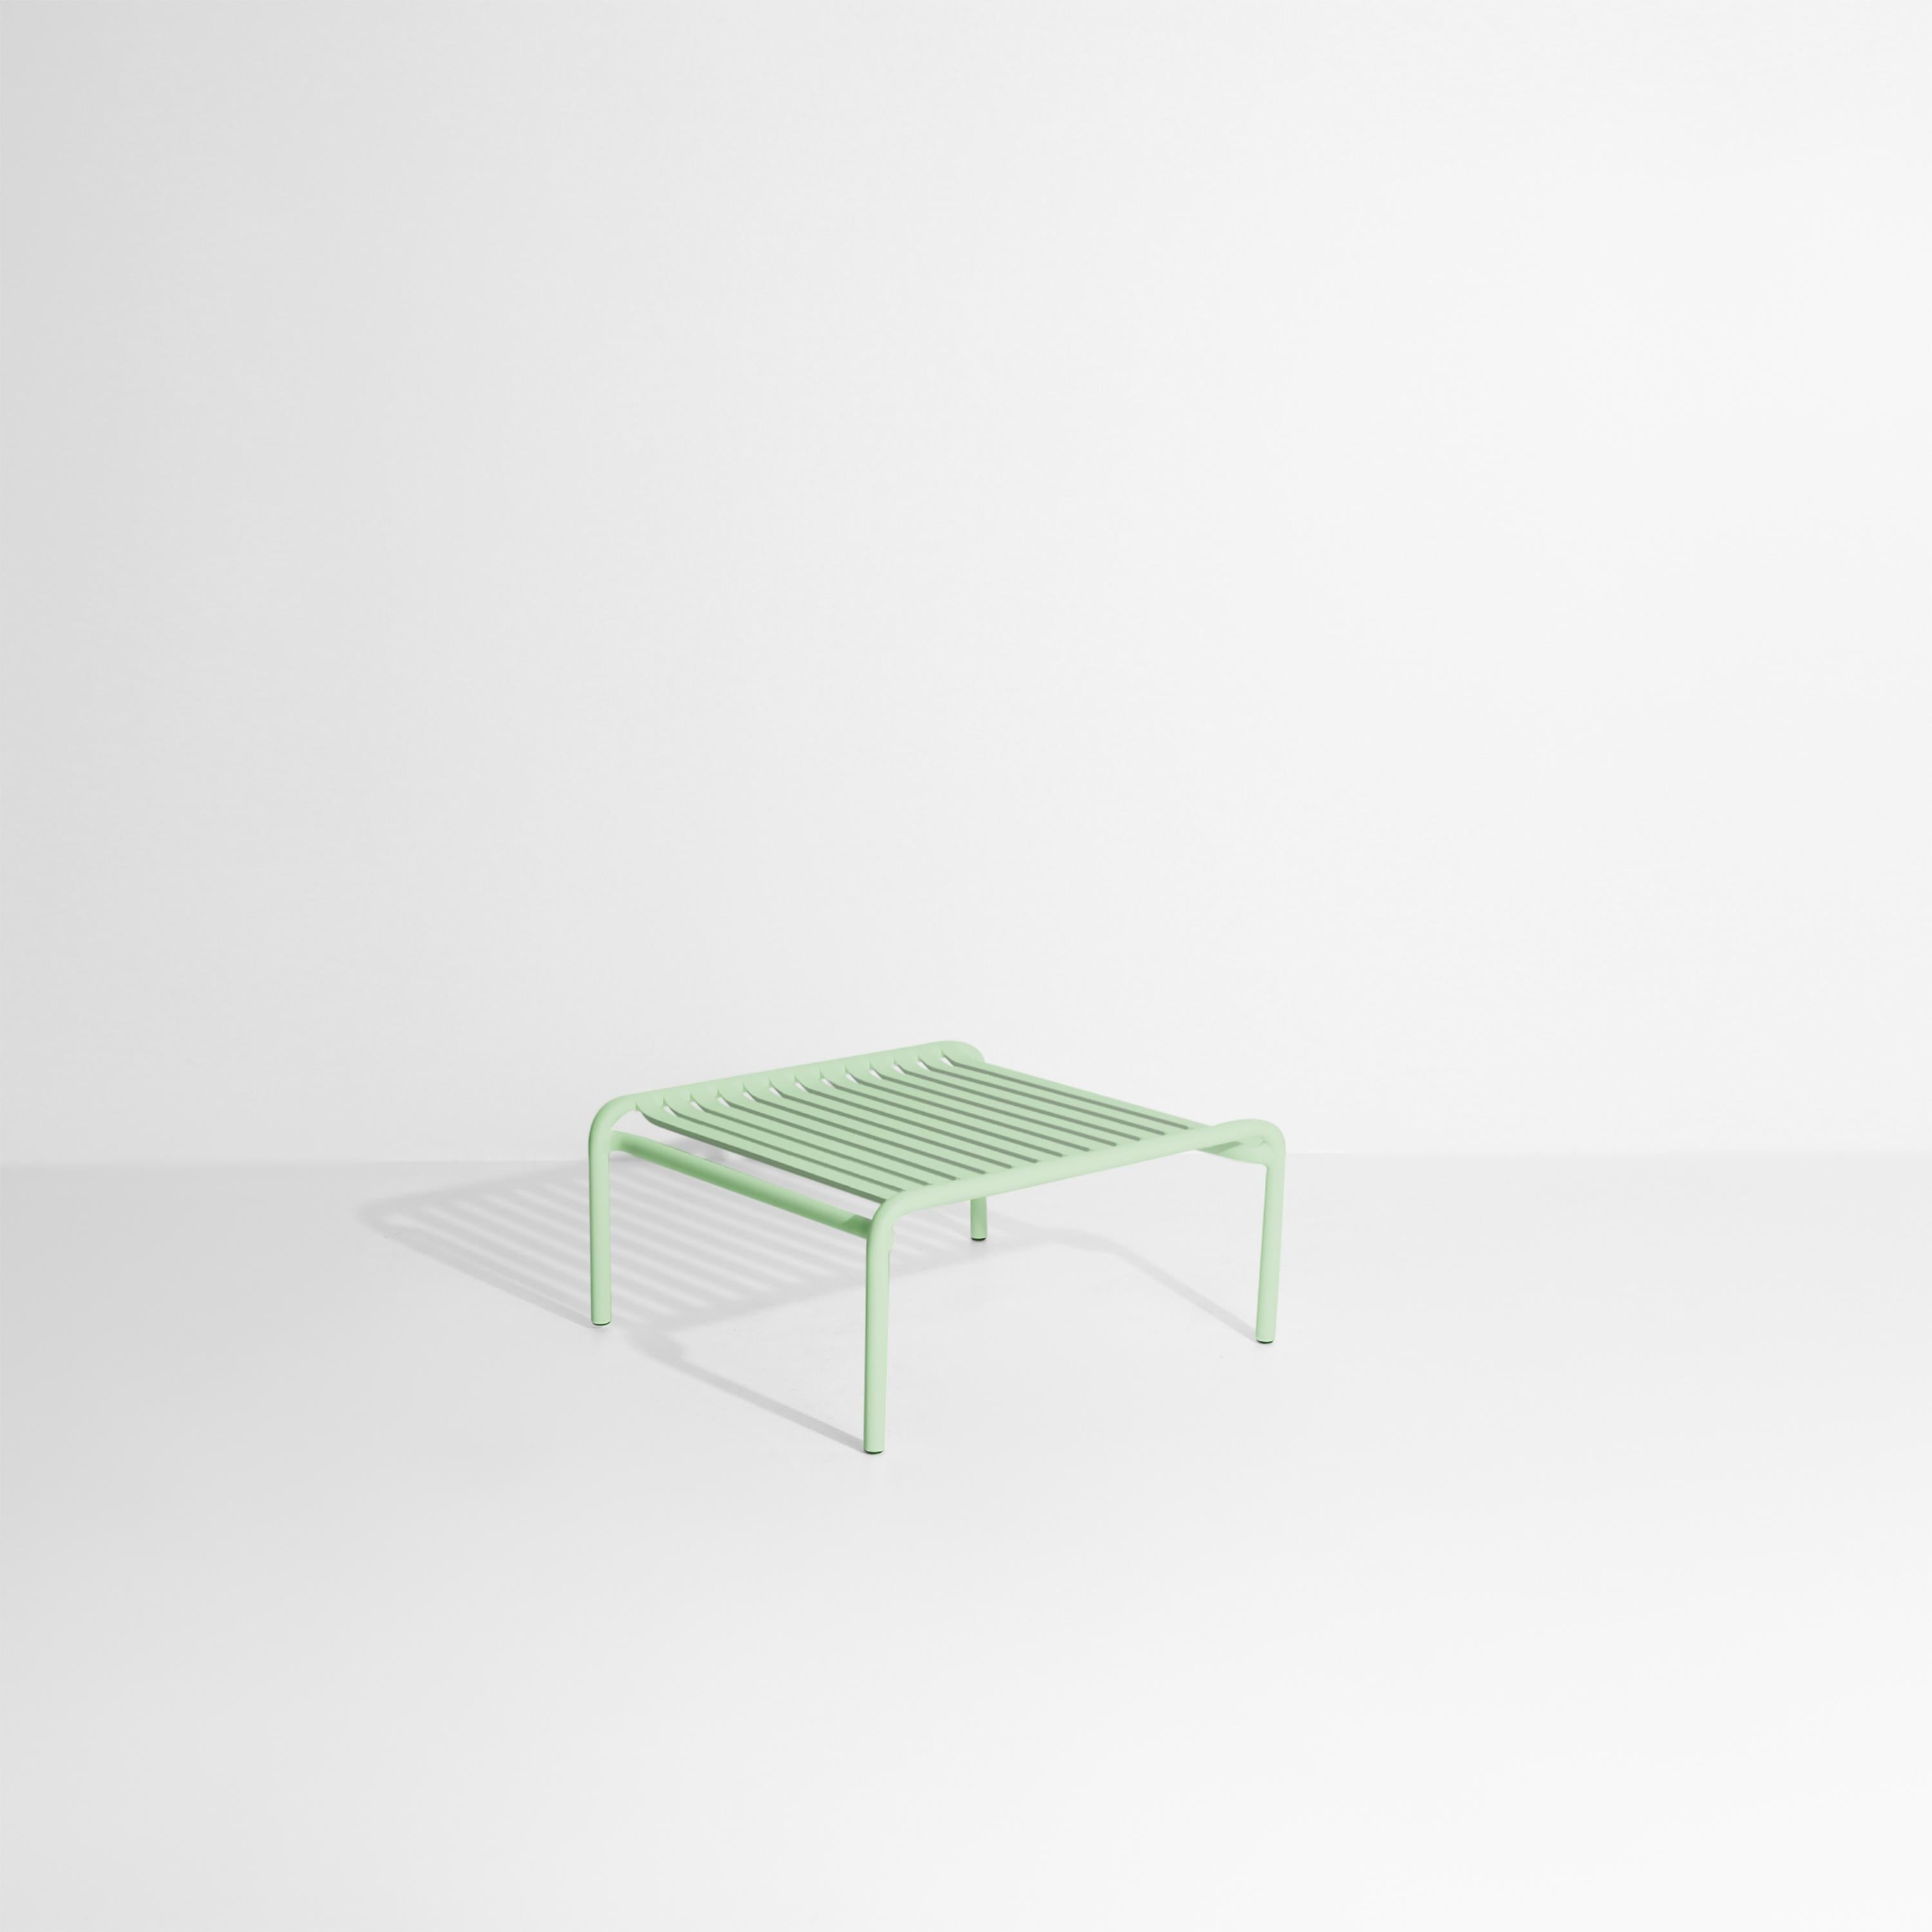 Table basse de week-end Petite Friture en aluminium vert pastel par Studio BrichetZiegler, 2017.

La collection week-end est une gamme complète de mobilier d'extérieur, en peinture époxy aluminium grainé, finition mate, qui comprend 18 fonctions et